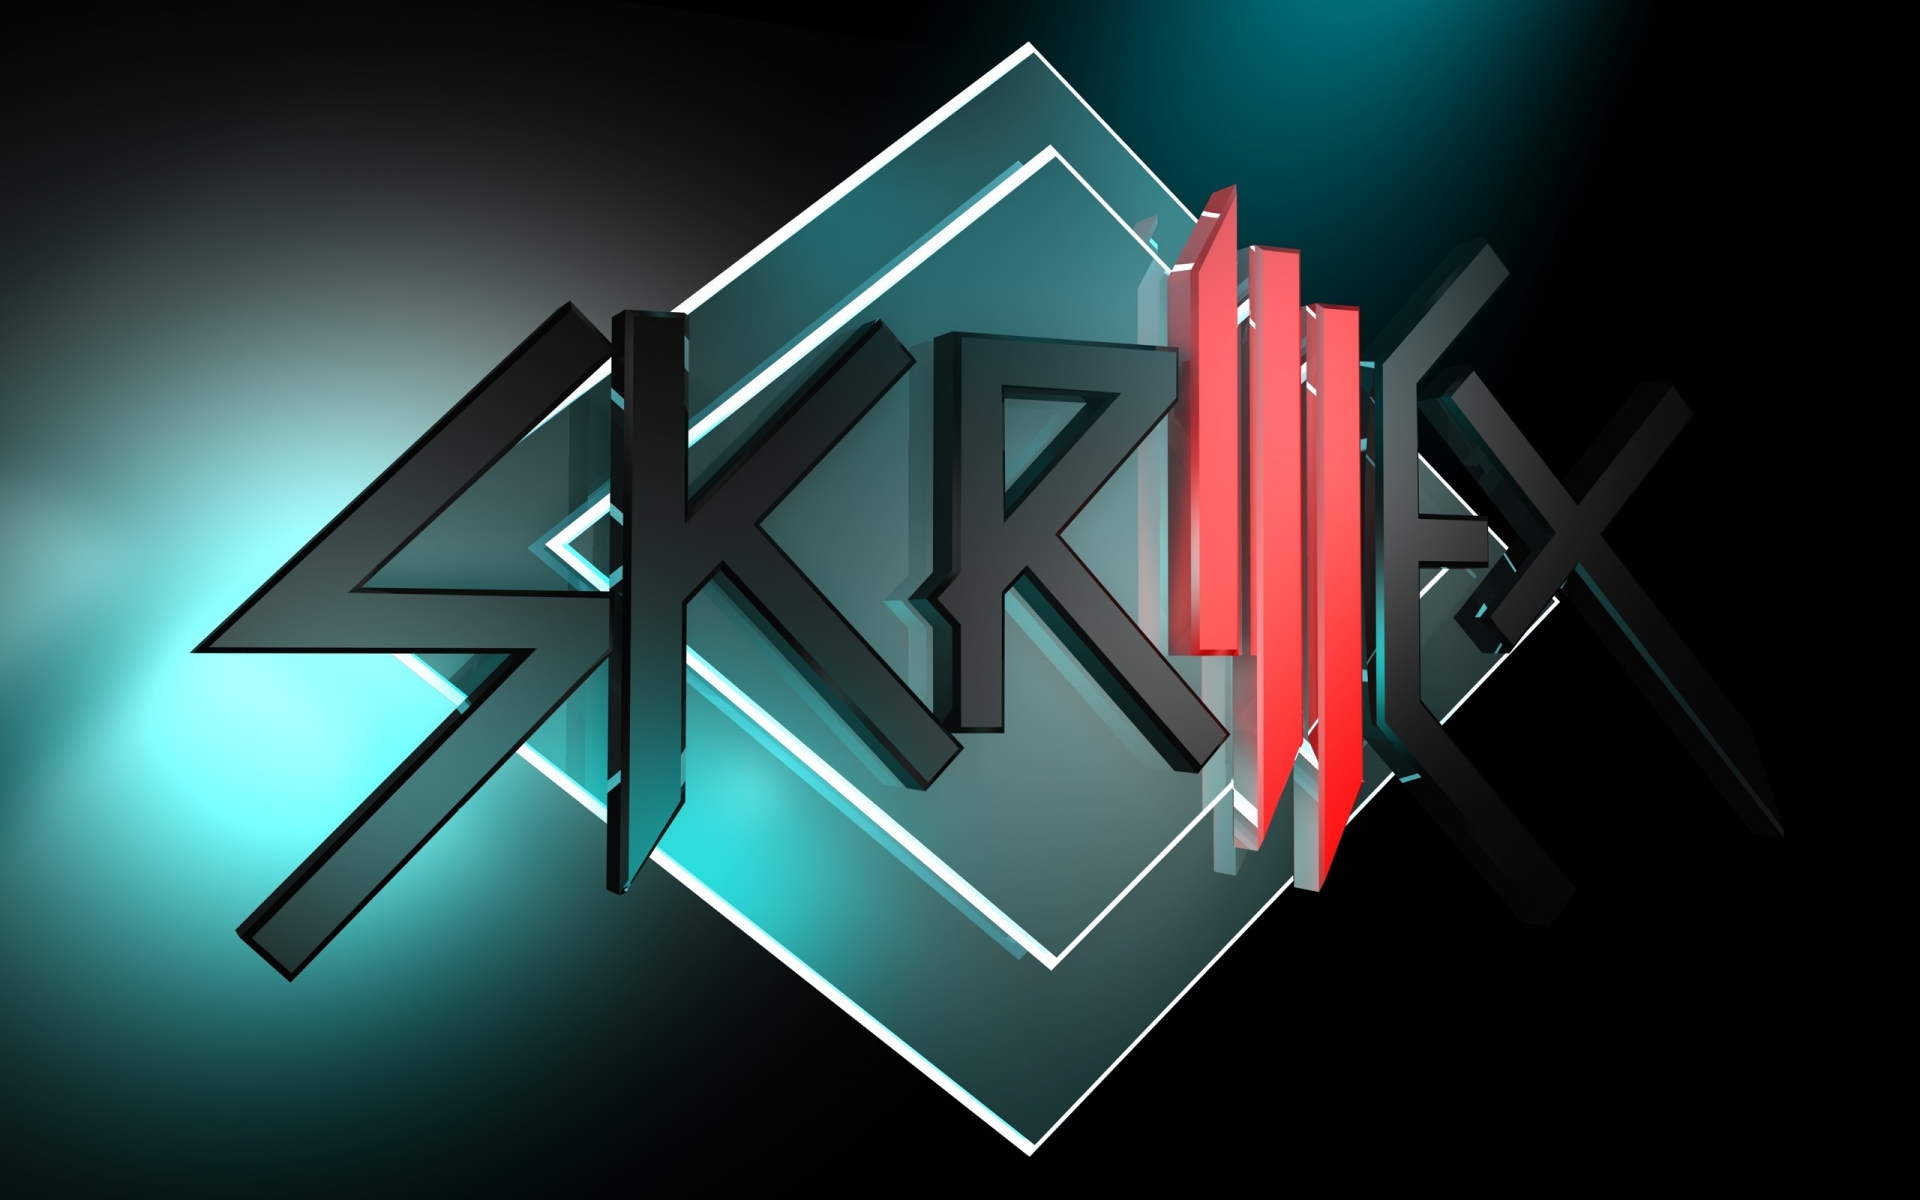 Skrillex Logo for 1920 x 1200 widescreen resolution